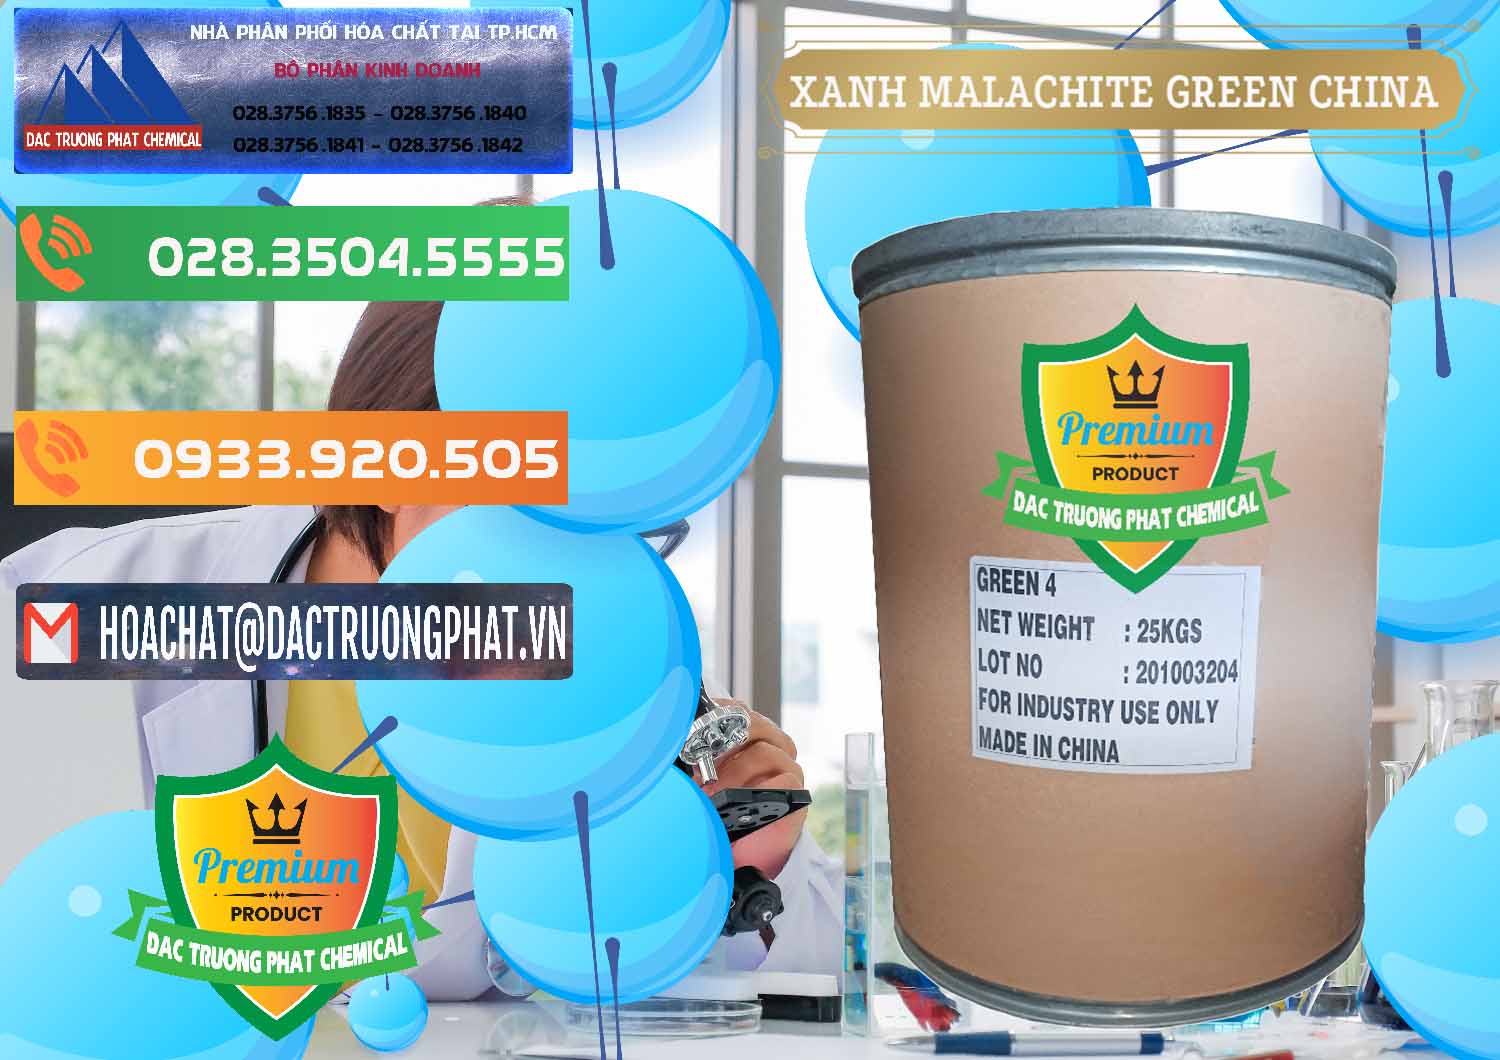 Chuyên cung cấp & bán Xanh Malachite Green Trung Quốc China - 0325 - Nơi chuyên bán - cung cấp hóa chất tại TP.HCM - hoachatxulynuoc.com.vn